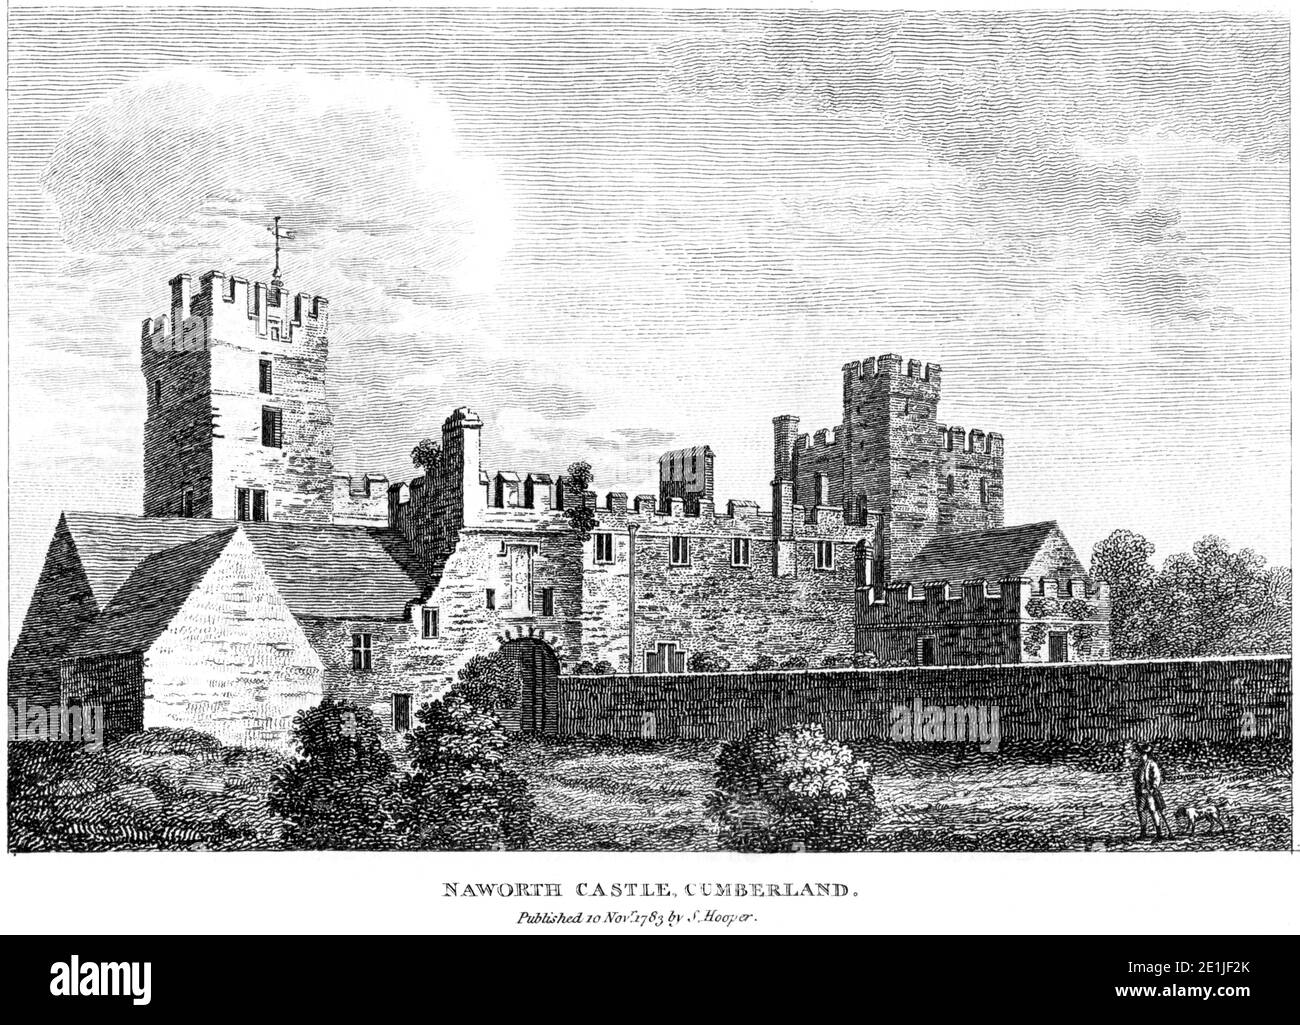 Un'incisione del Castello di Naworth, Cumberland pubblicò il 10 novembre 1783 scandita ad alta risoluzione da un libro pubblicato nel 1780. Foto Stock